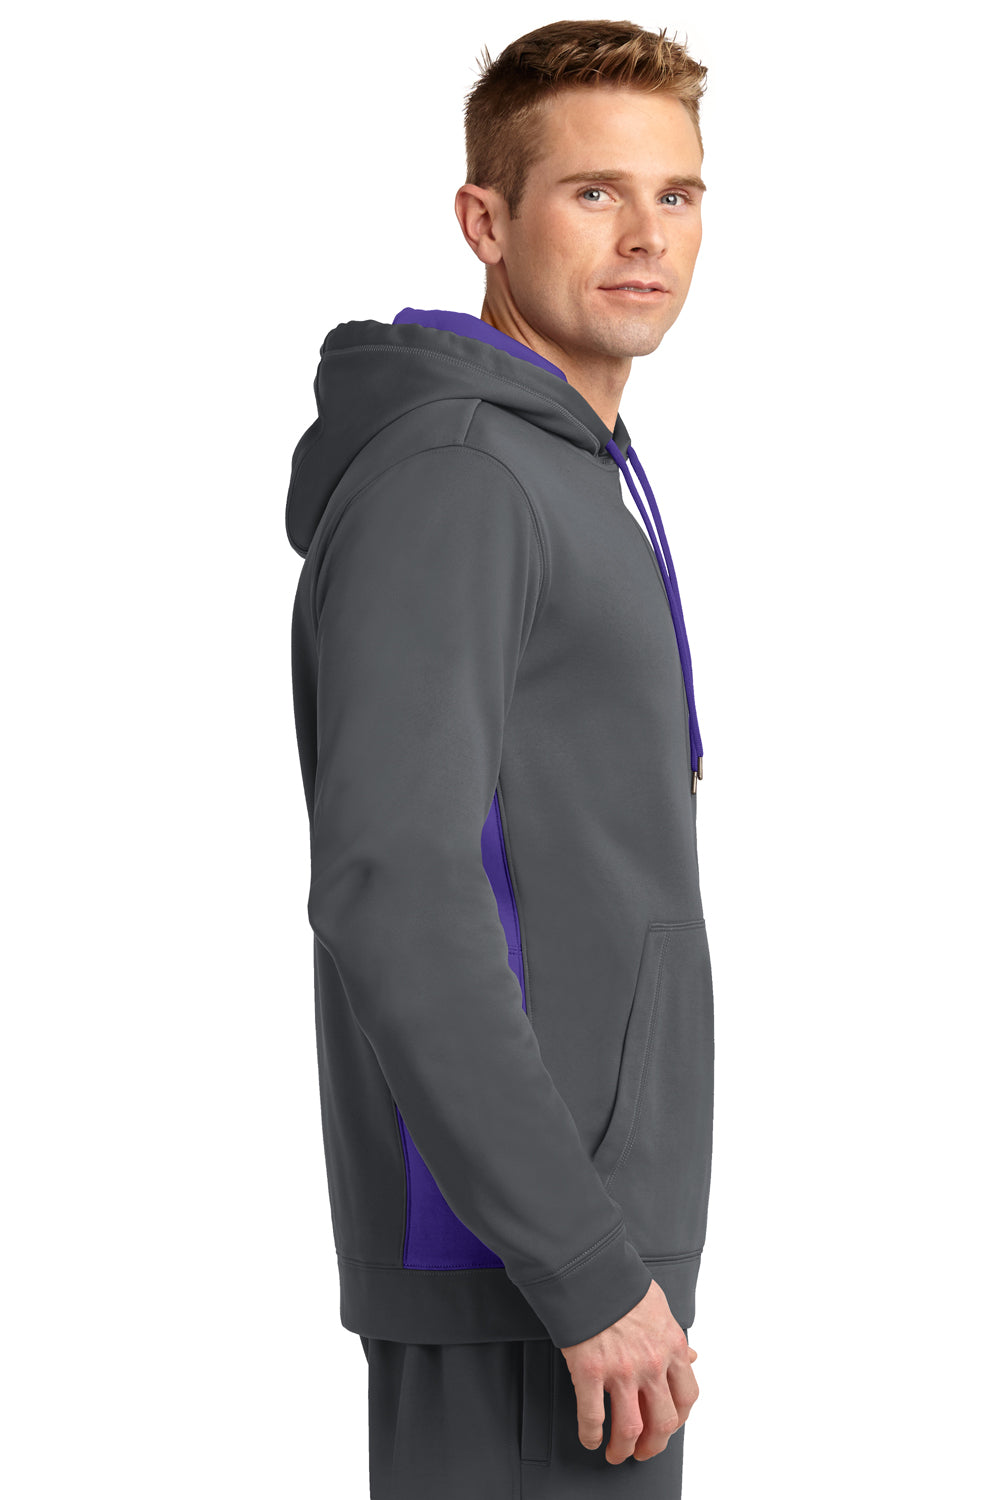 Sport-Tek ST235 Mens Sport-Wick Moisture Wicking Fleece Hooded Sweatshirt Hoodie Dark Grey/Purple Side